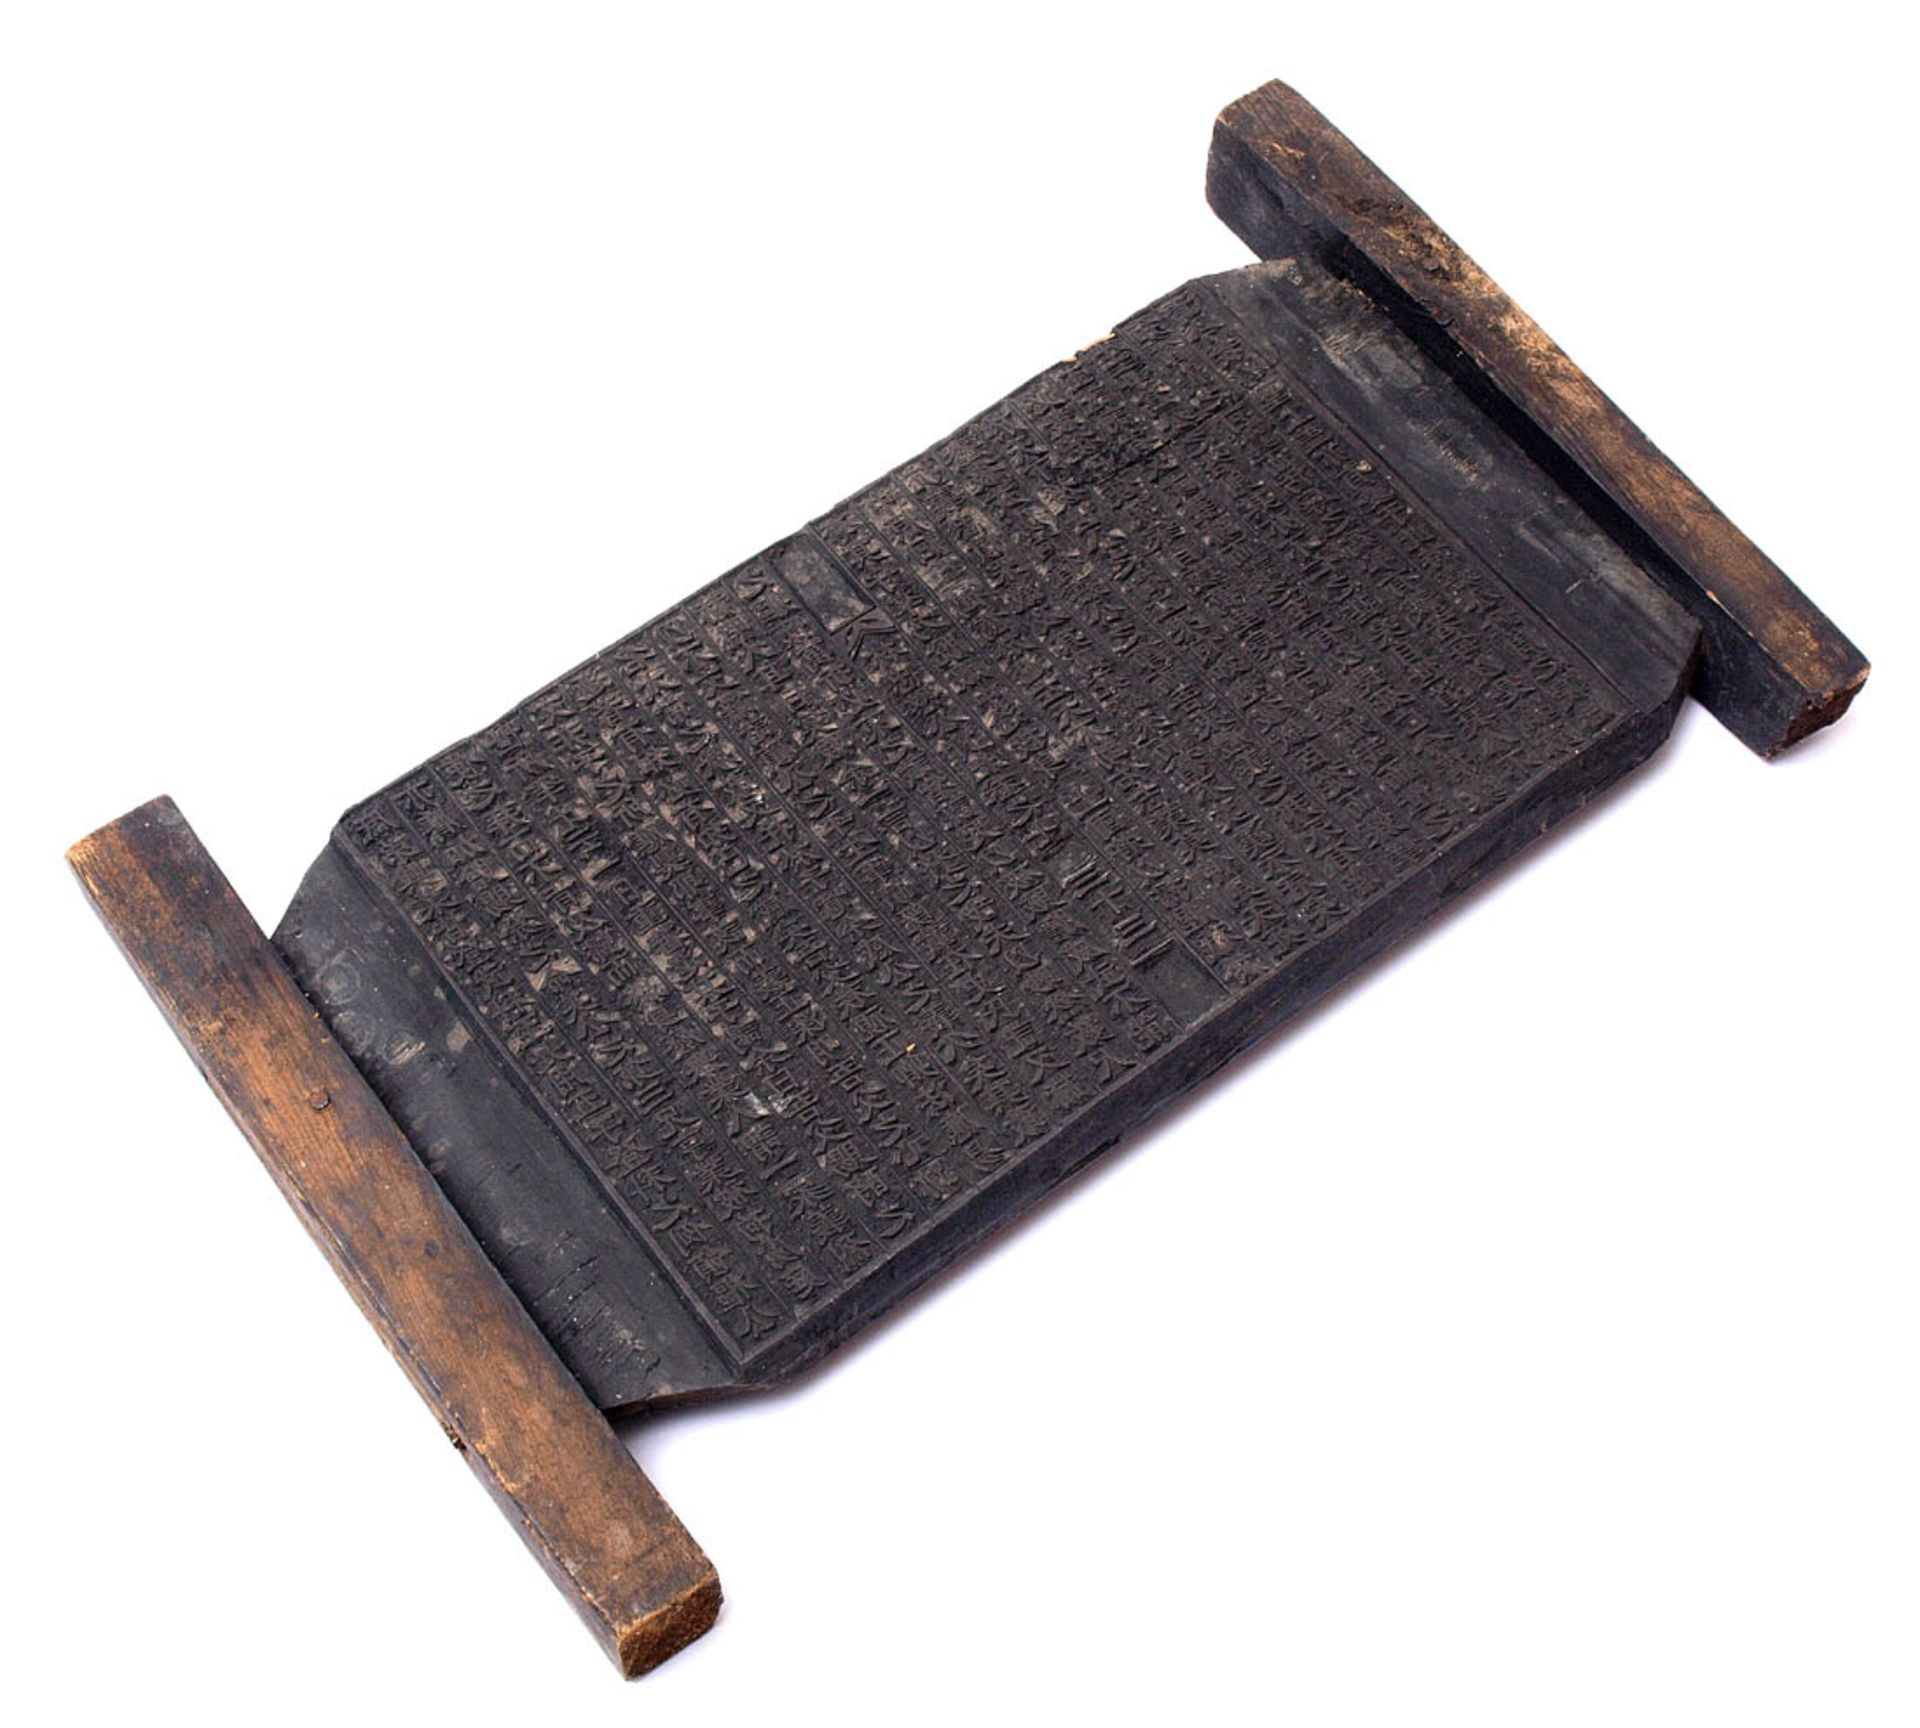 Wandtafel, China, 18./19.Jhdt.Holztafel, auf Vorder- und Rückseite mit eingeschnitzten